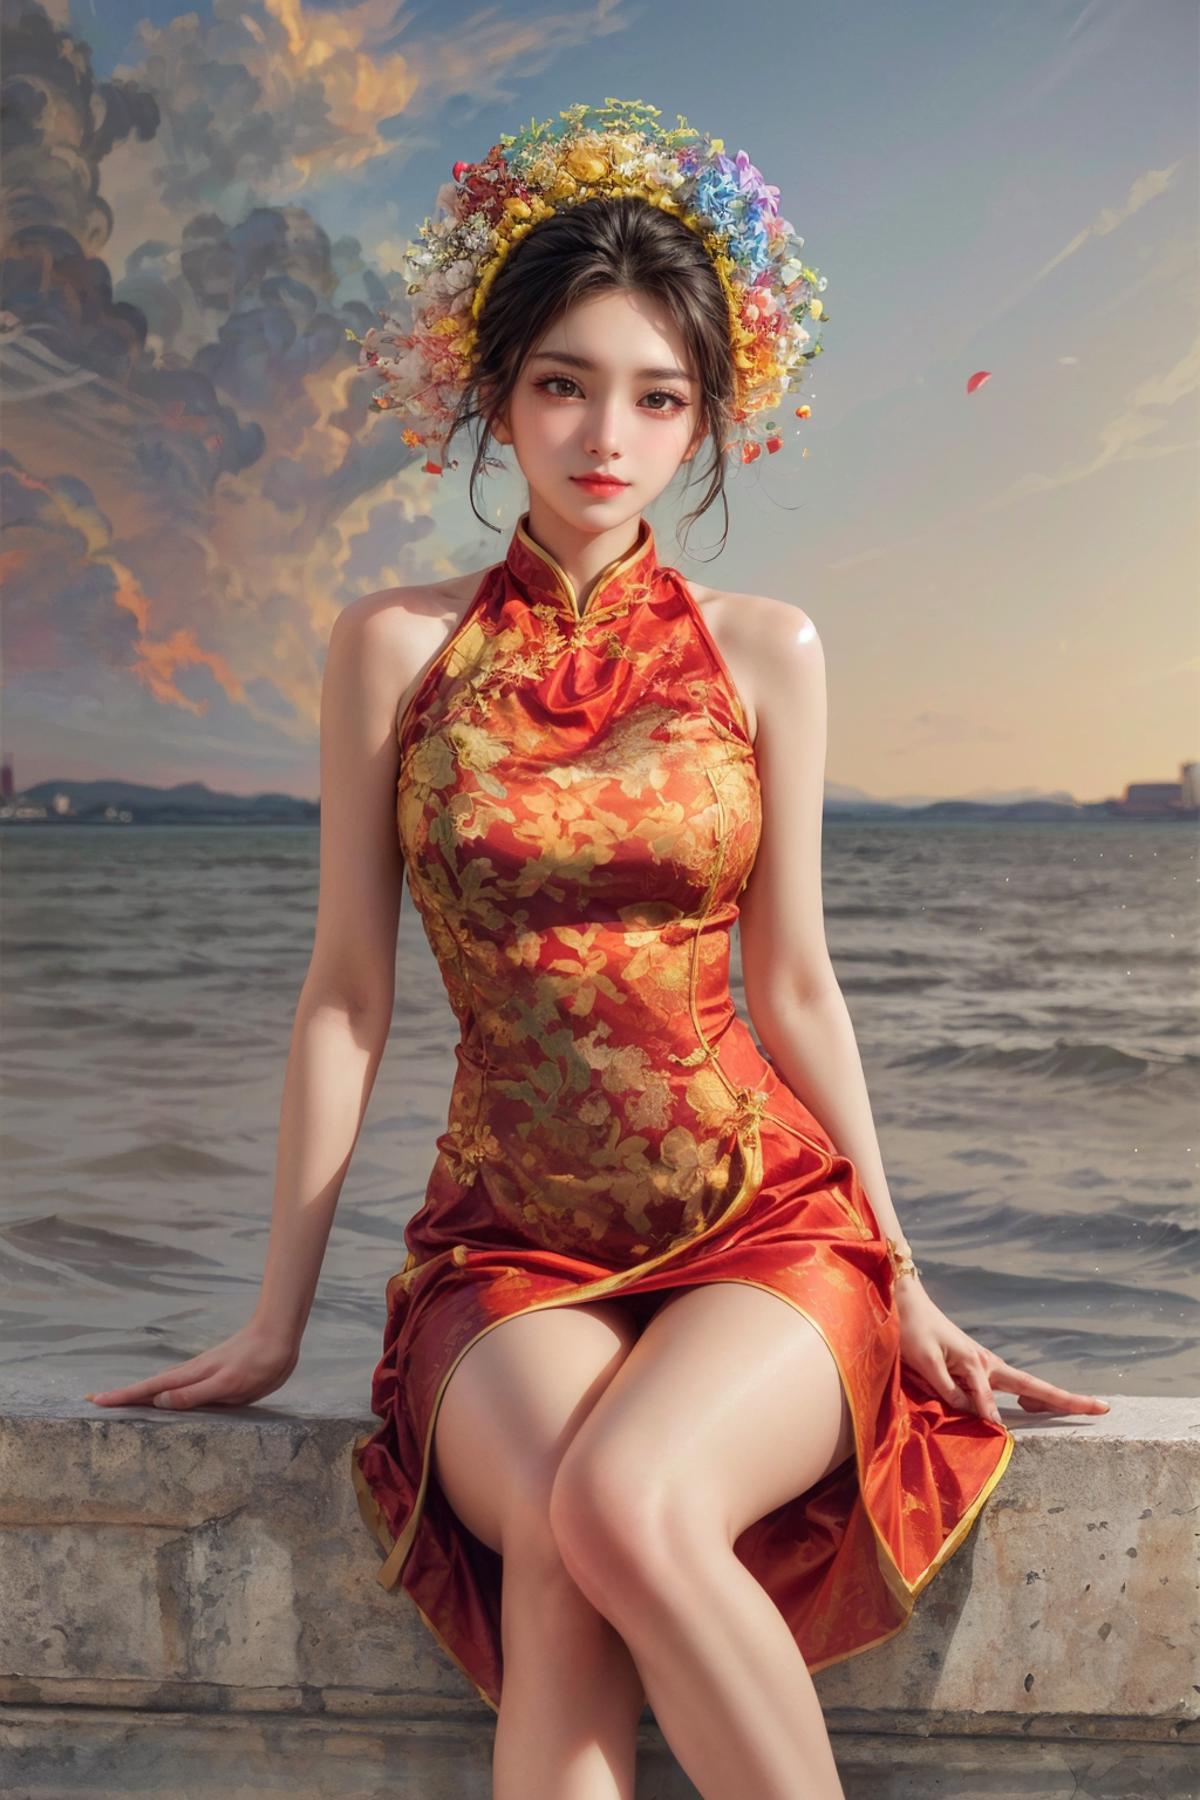 浔埔女-簪花围头饰 | Xunpu-Hairpin flowers | Chinese traditional clothing image by yoyochen2023